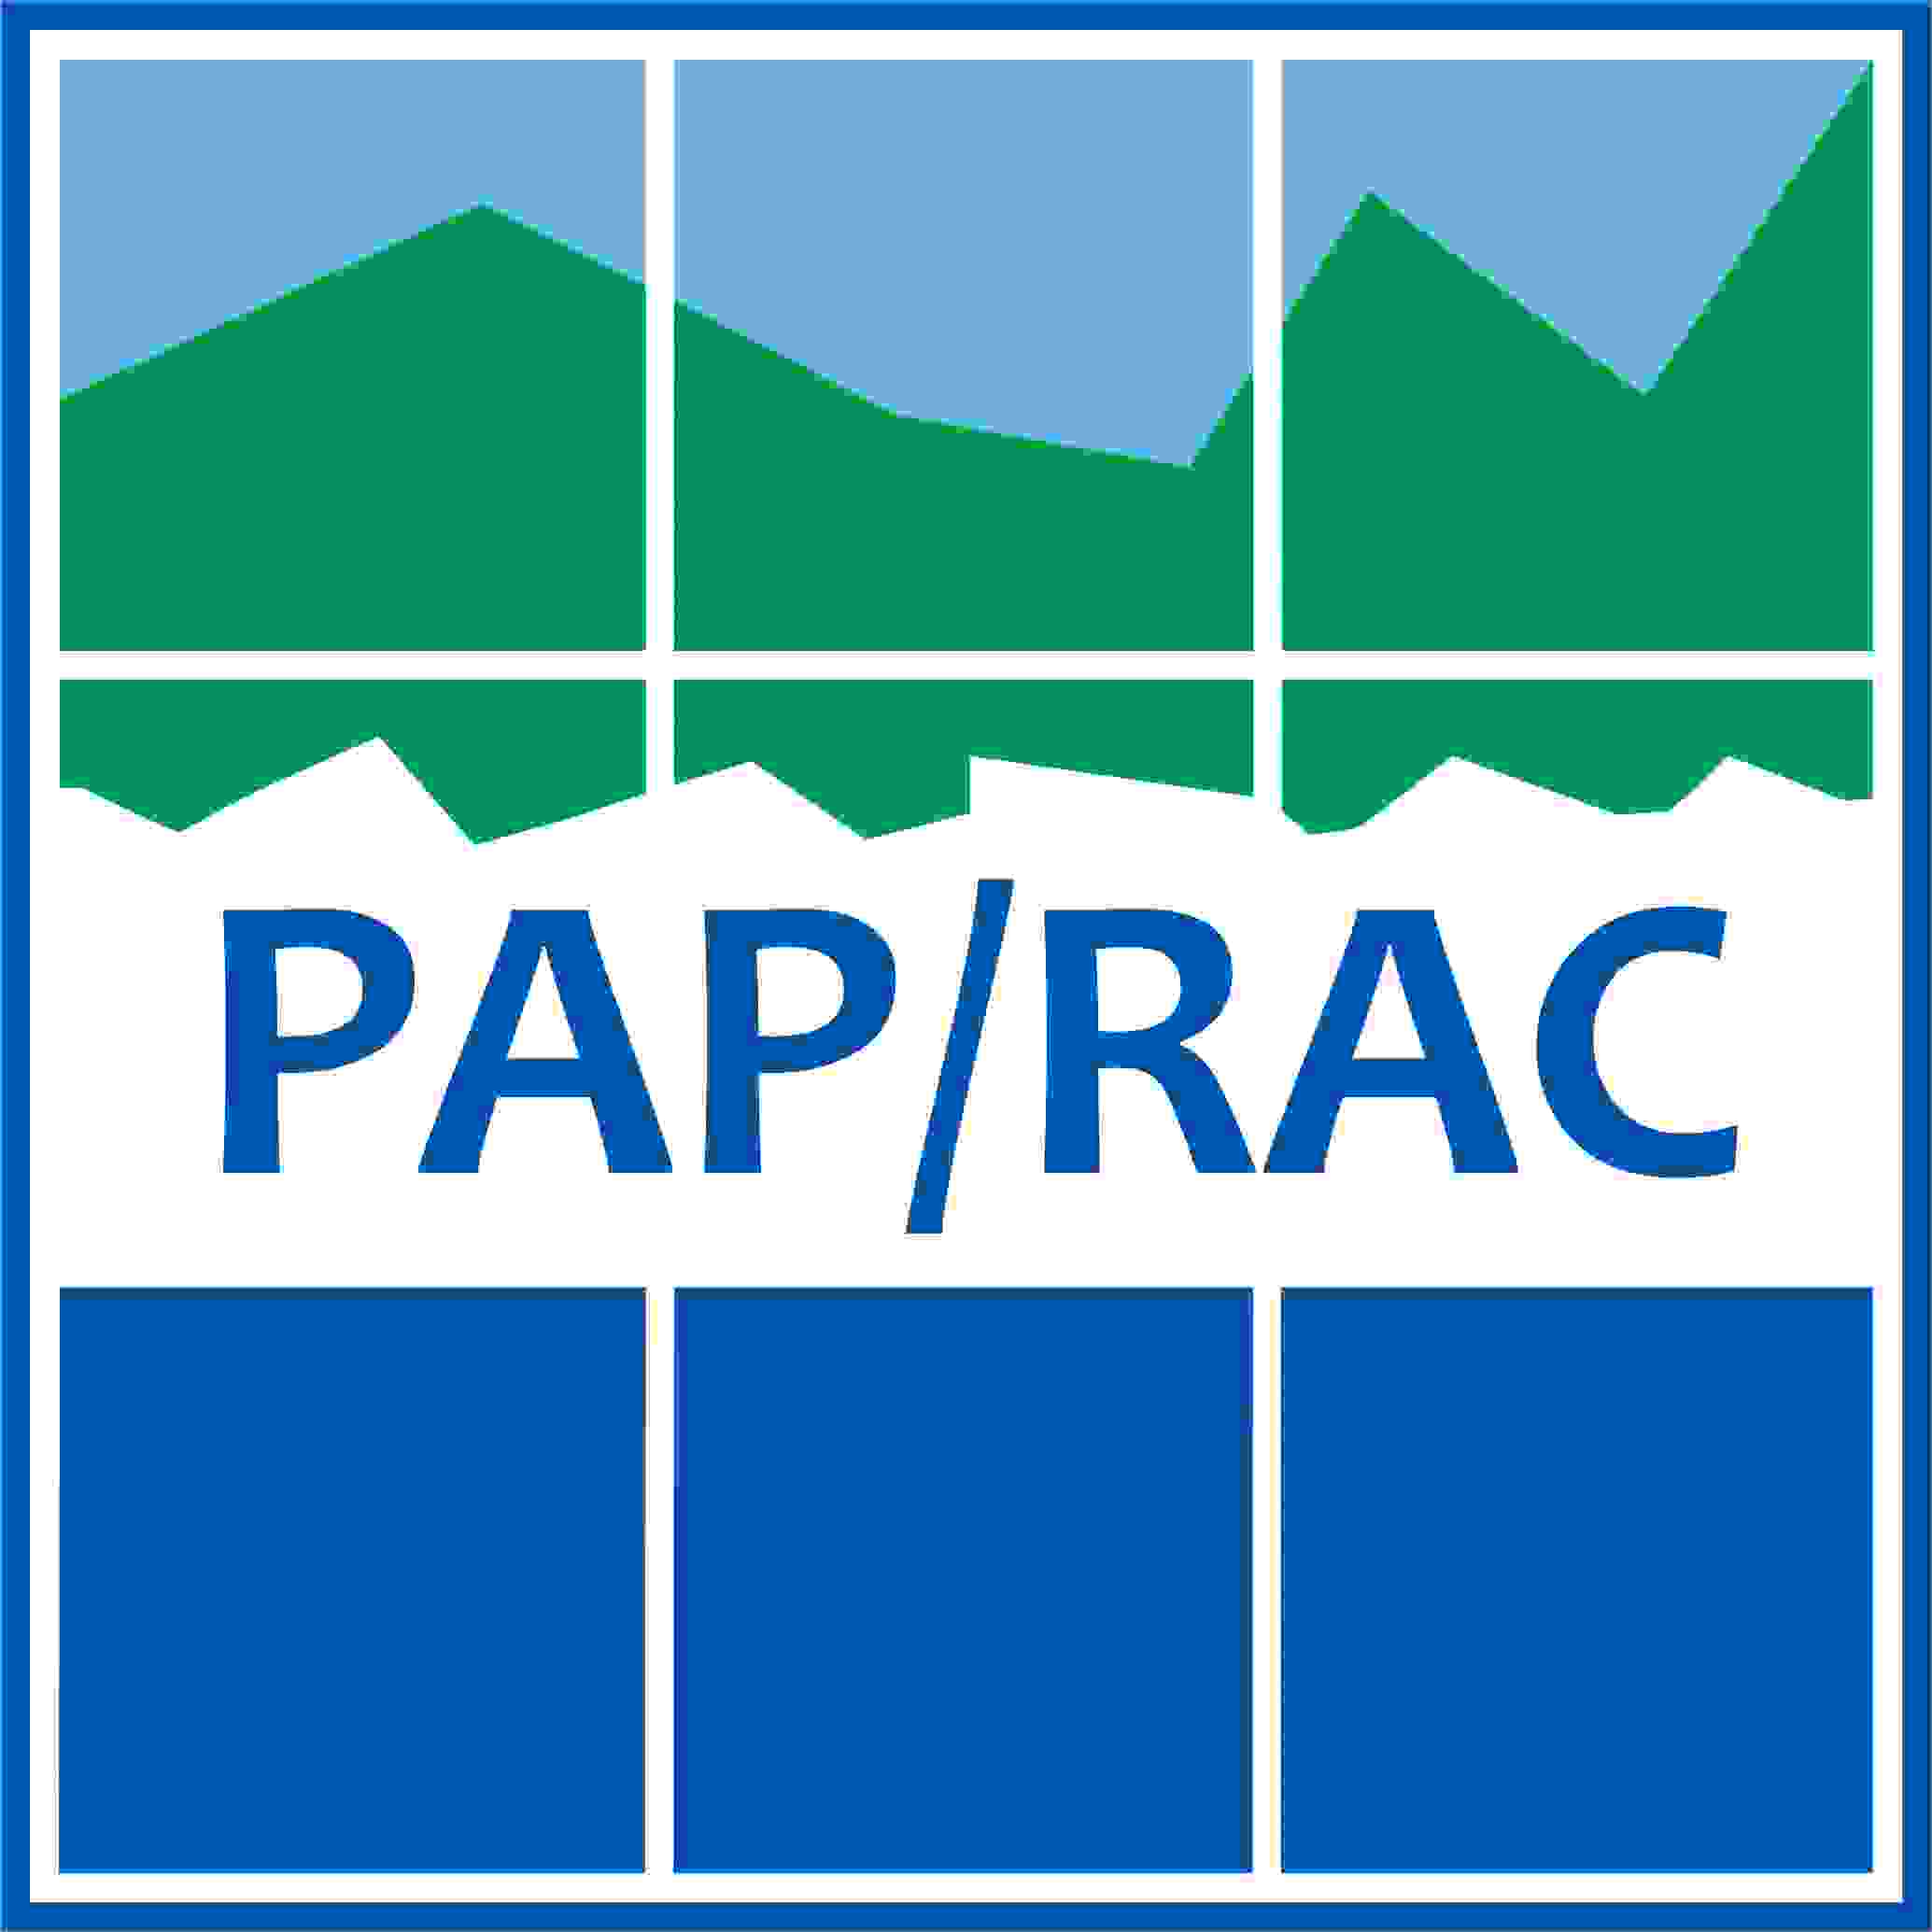 Pap App Logo - Logos